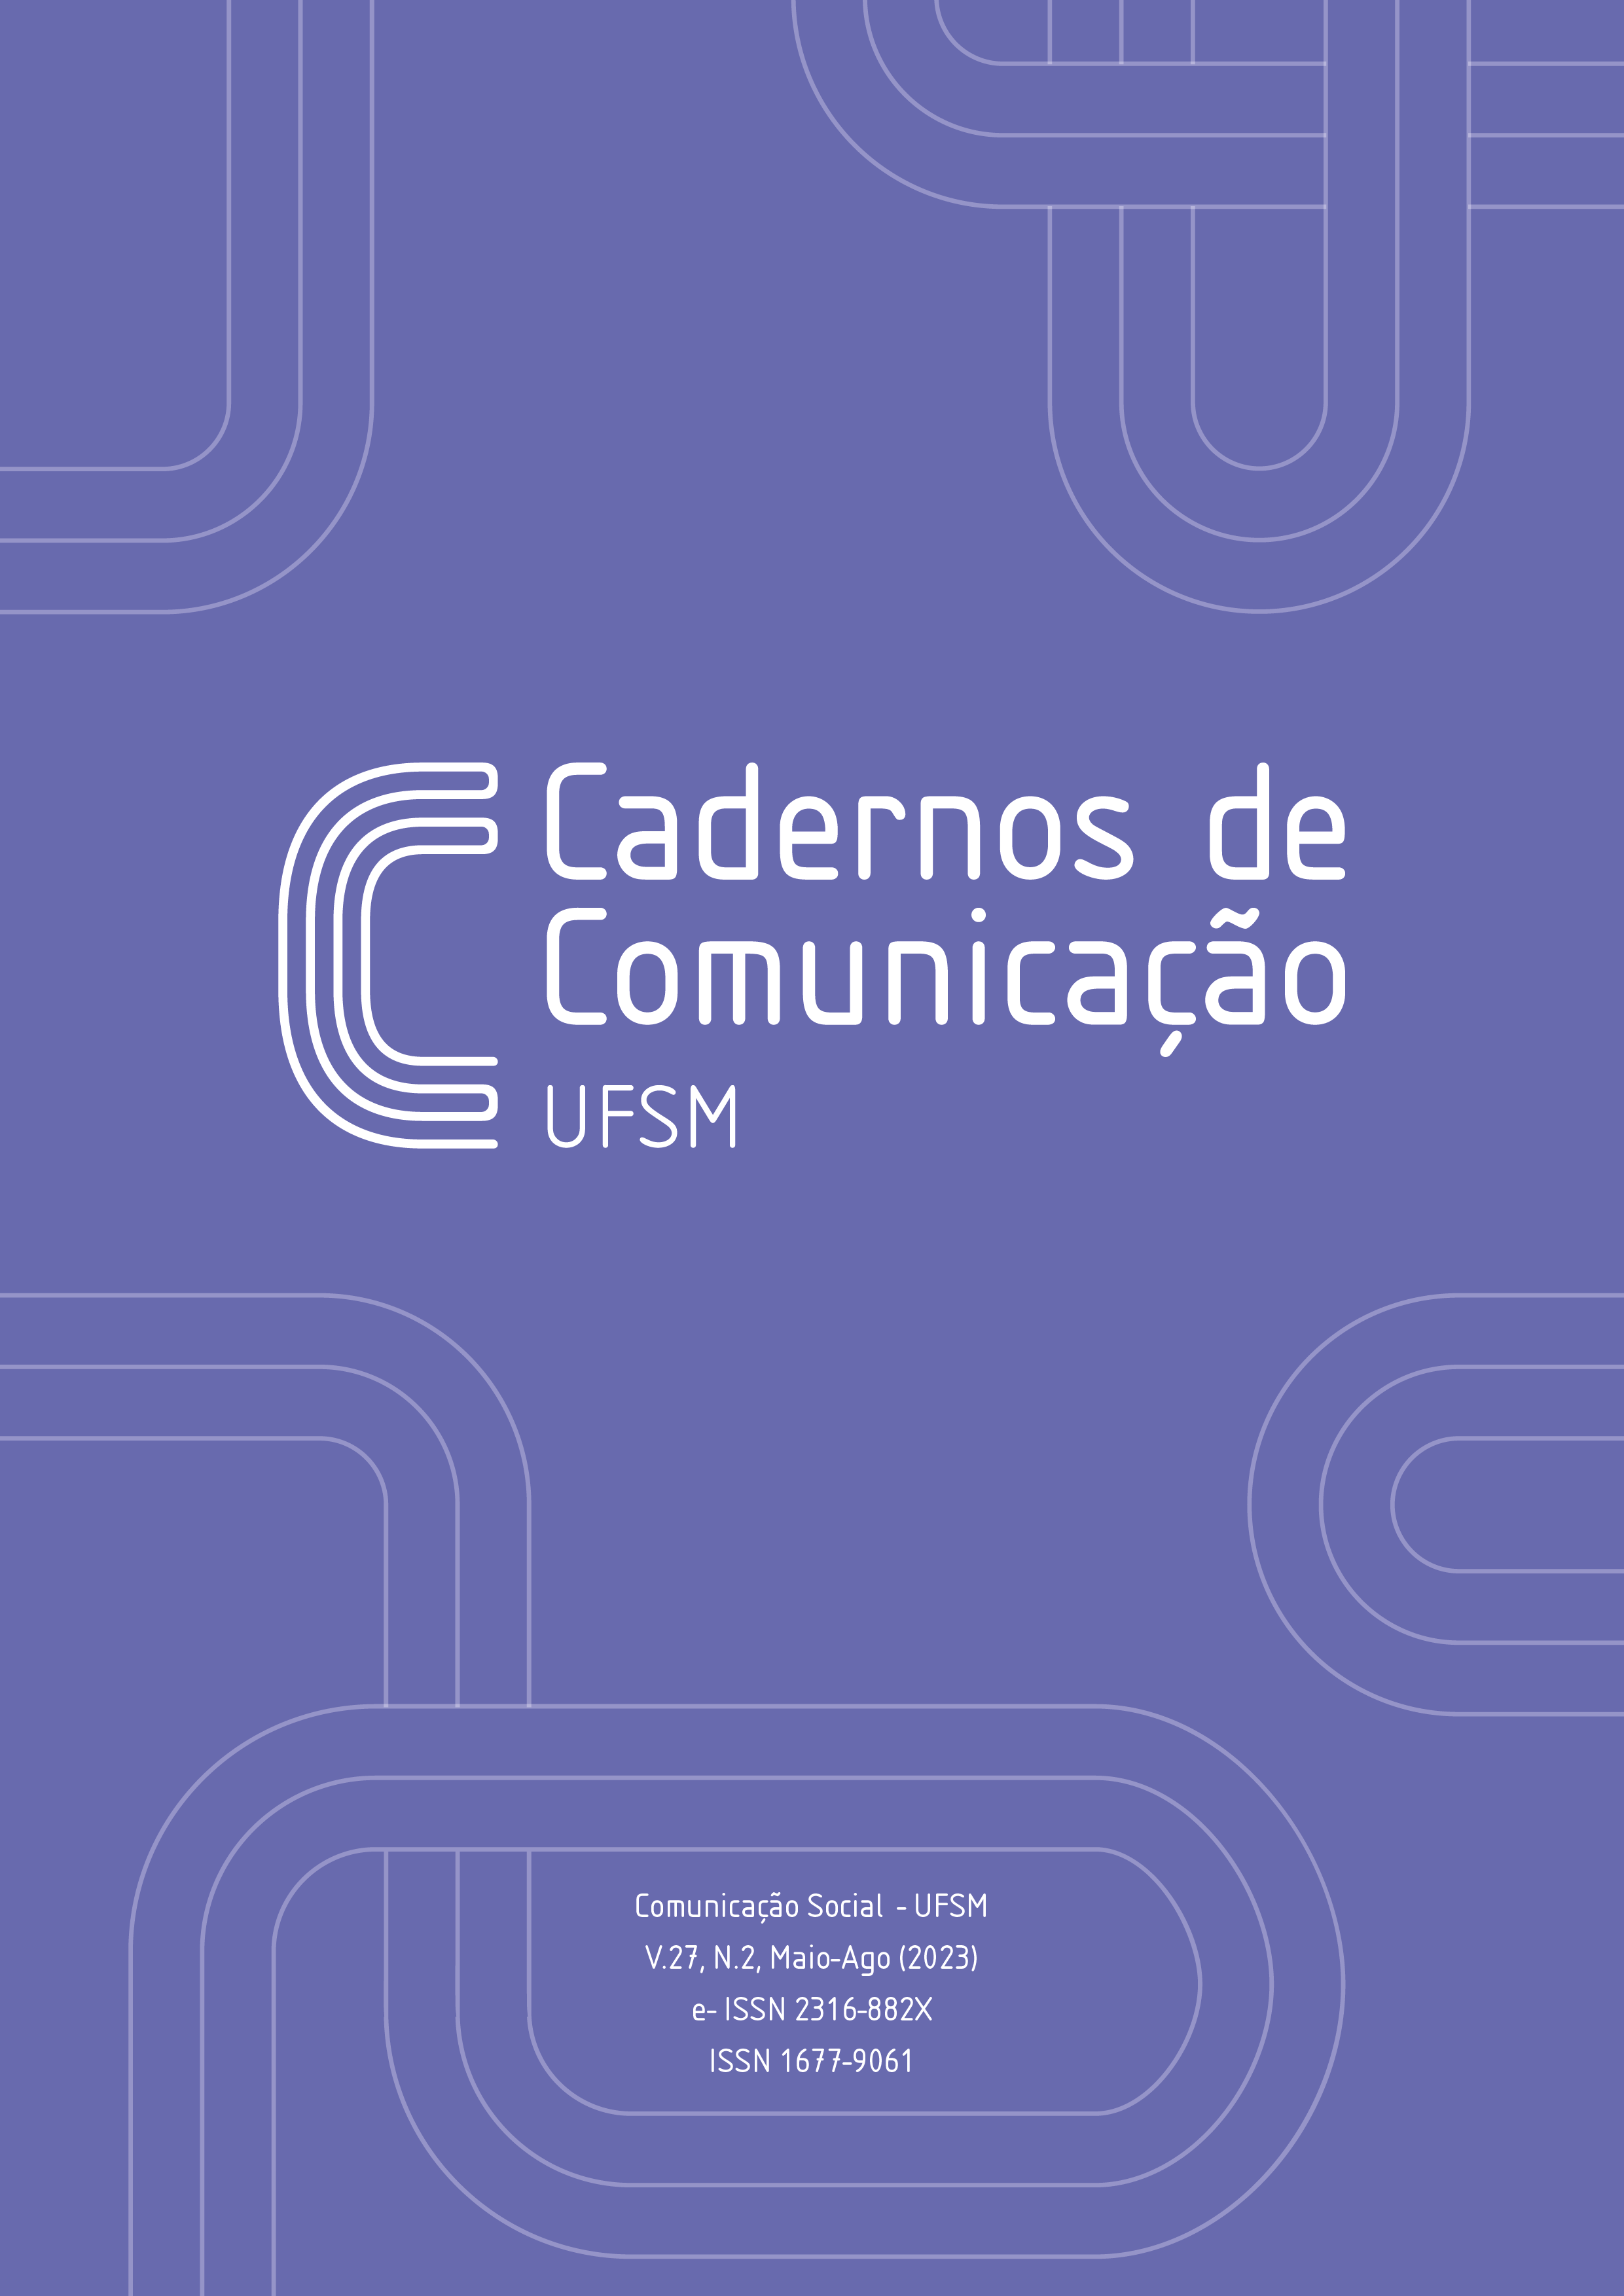 Imagem em formato retrato com fundo roxo, ao centro está escrito "Cadernos de" na horizontal, no lado direito está escrito "Comunicação" na vertical. Na parte inferior, está escrito: Comunicação Social  - UFSM V.27, N.2, Maio-Ago (2023) e- ISSN 2316-882X ISSN 1677-9061.